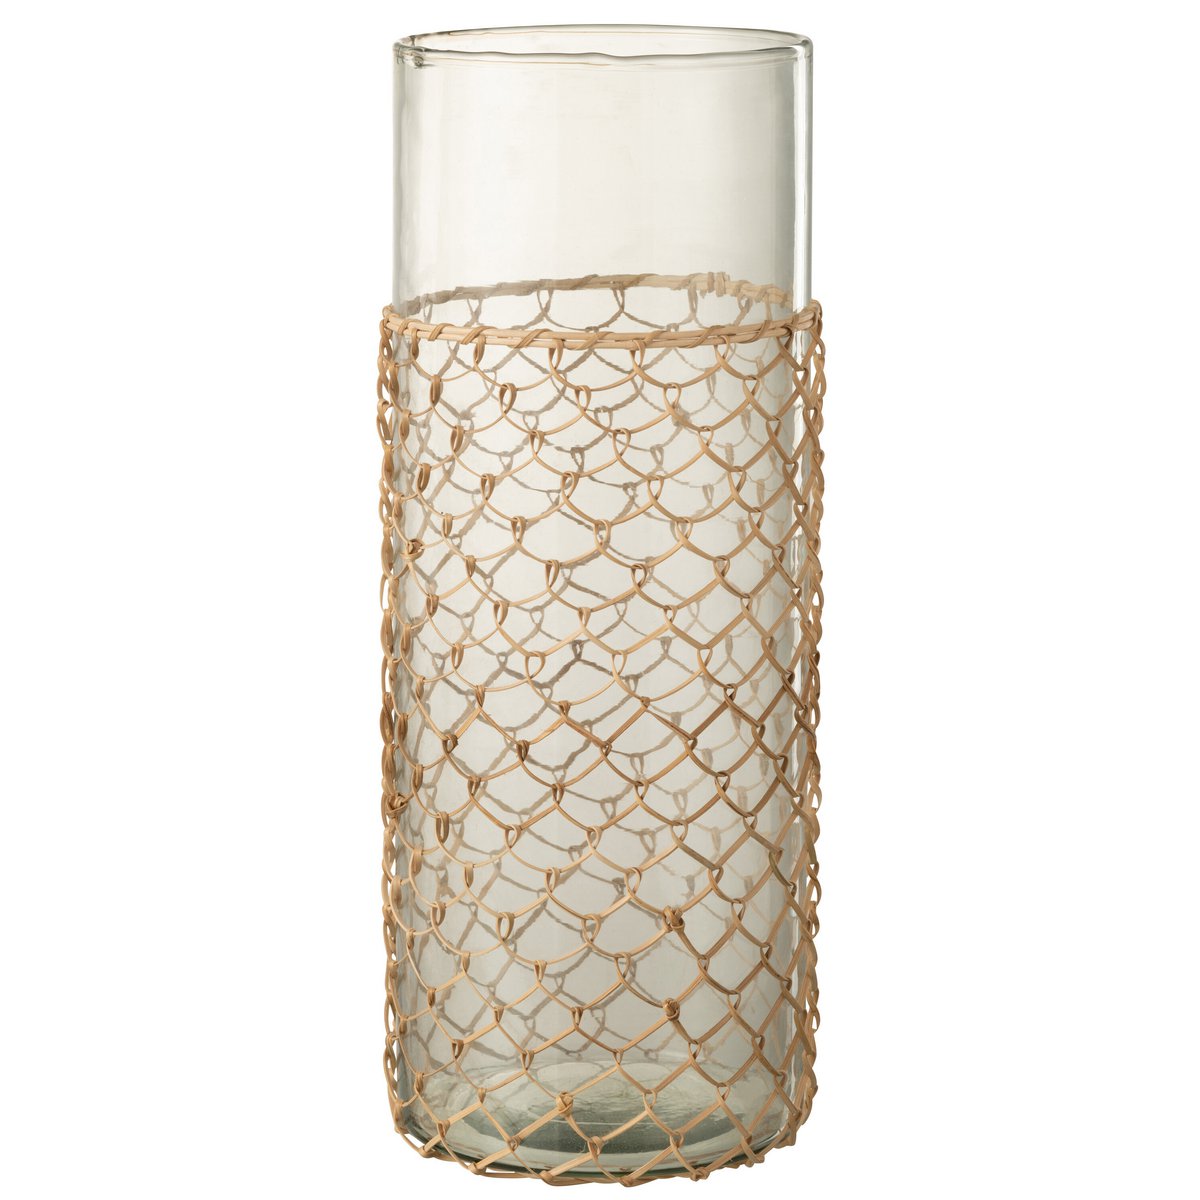 Große Vase aus gestricktem Schilfrohr/Glas - 42,5 cm hoch